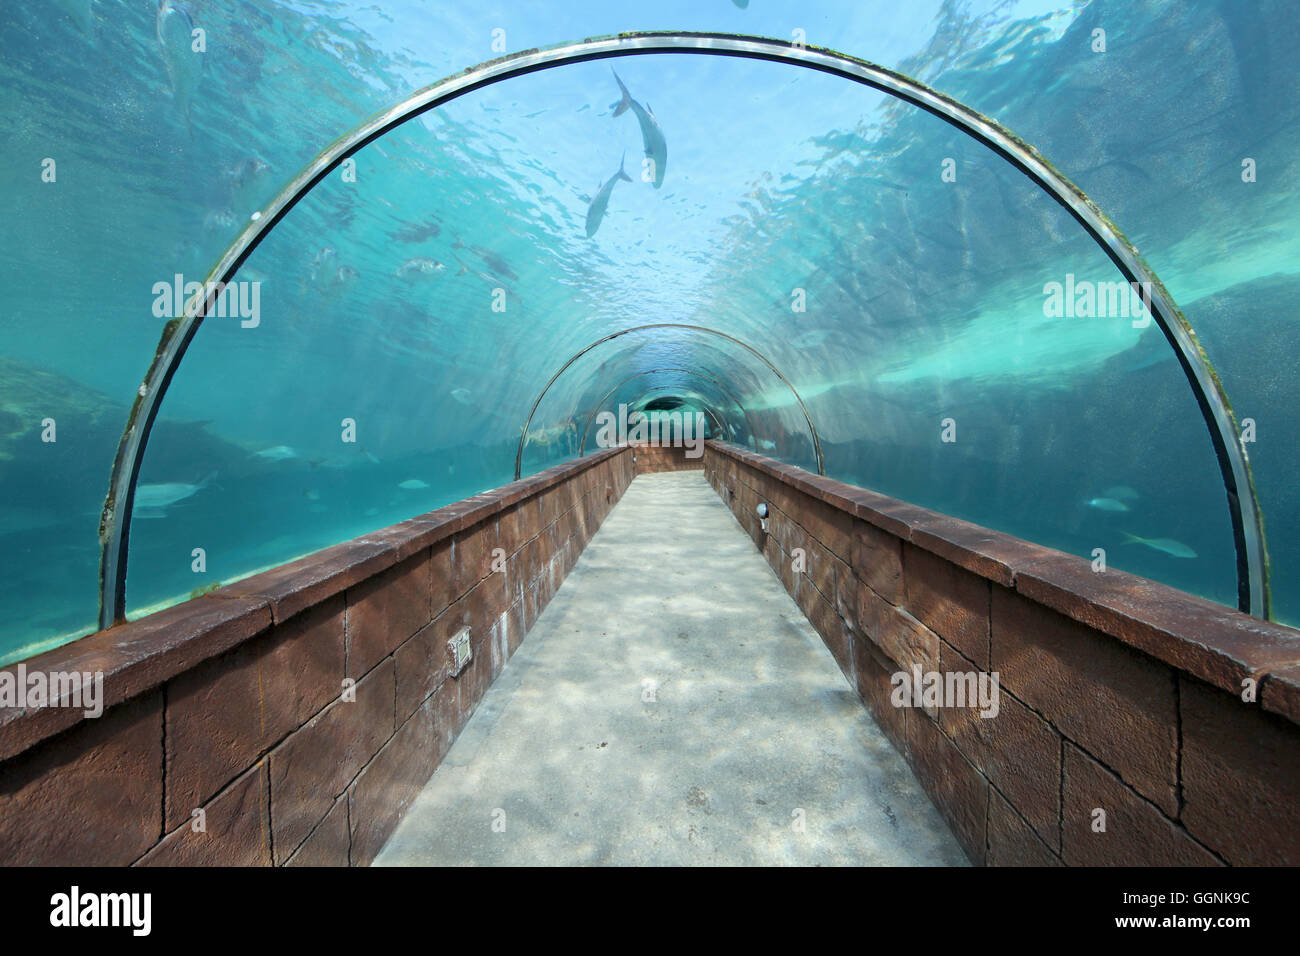 À l'intermédiaire d'un tunnel de l'aquarium avec des poissons Banque D'Images